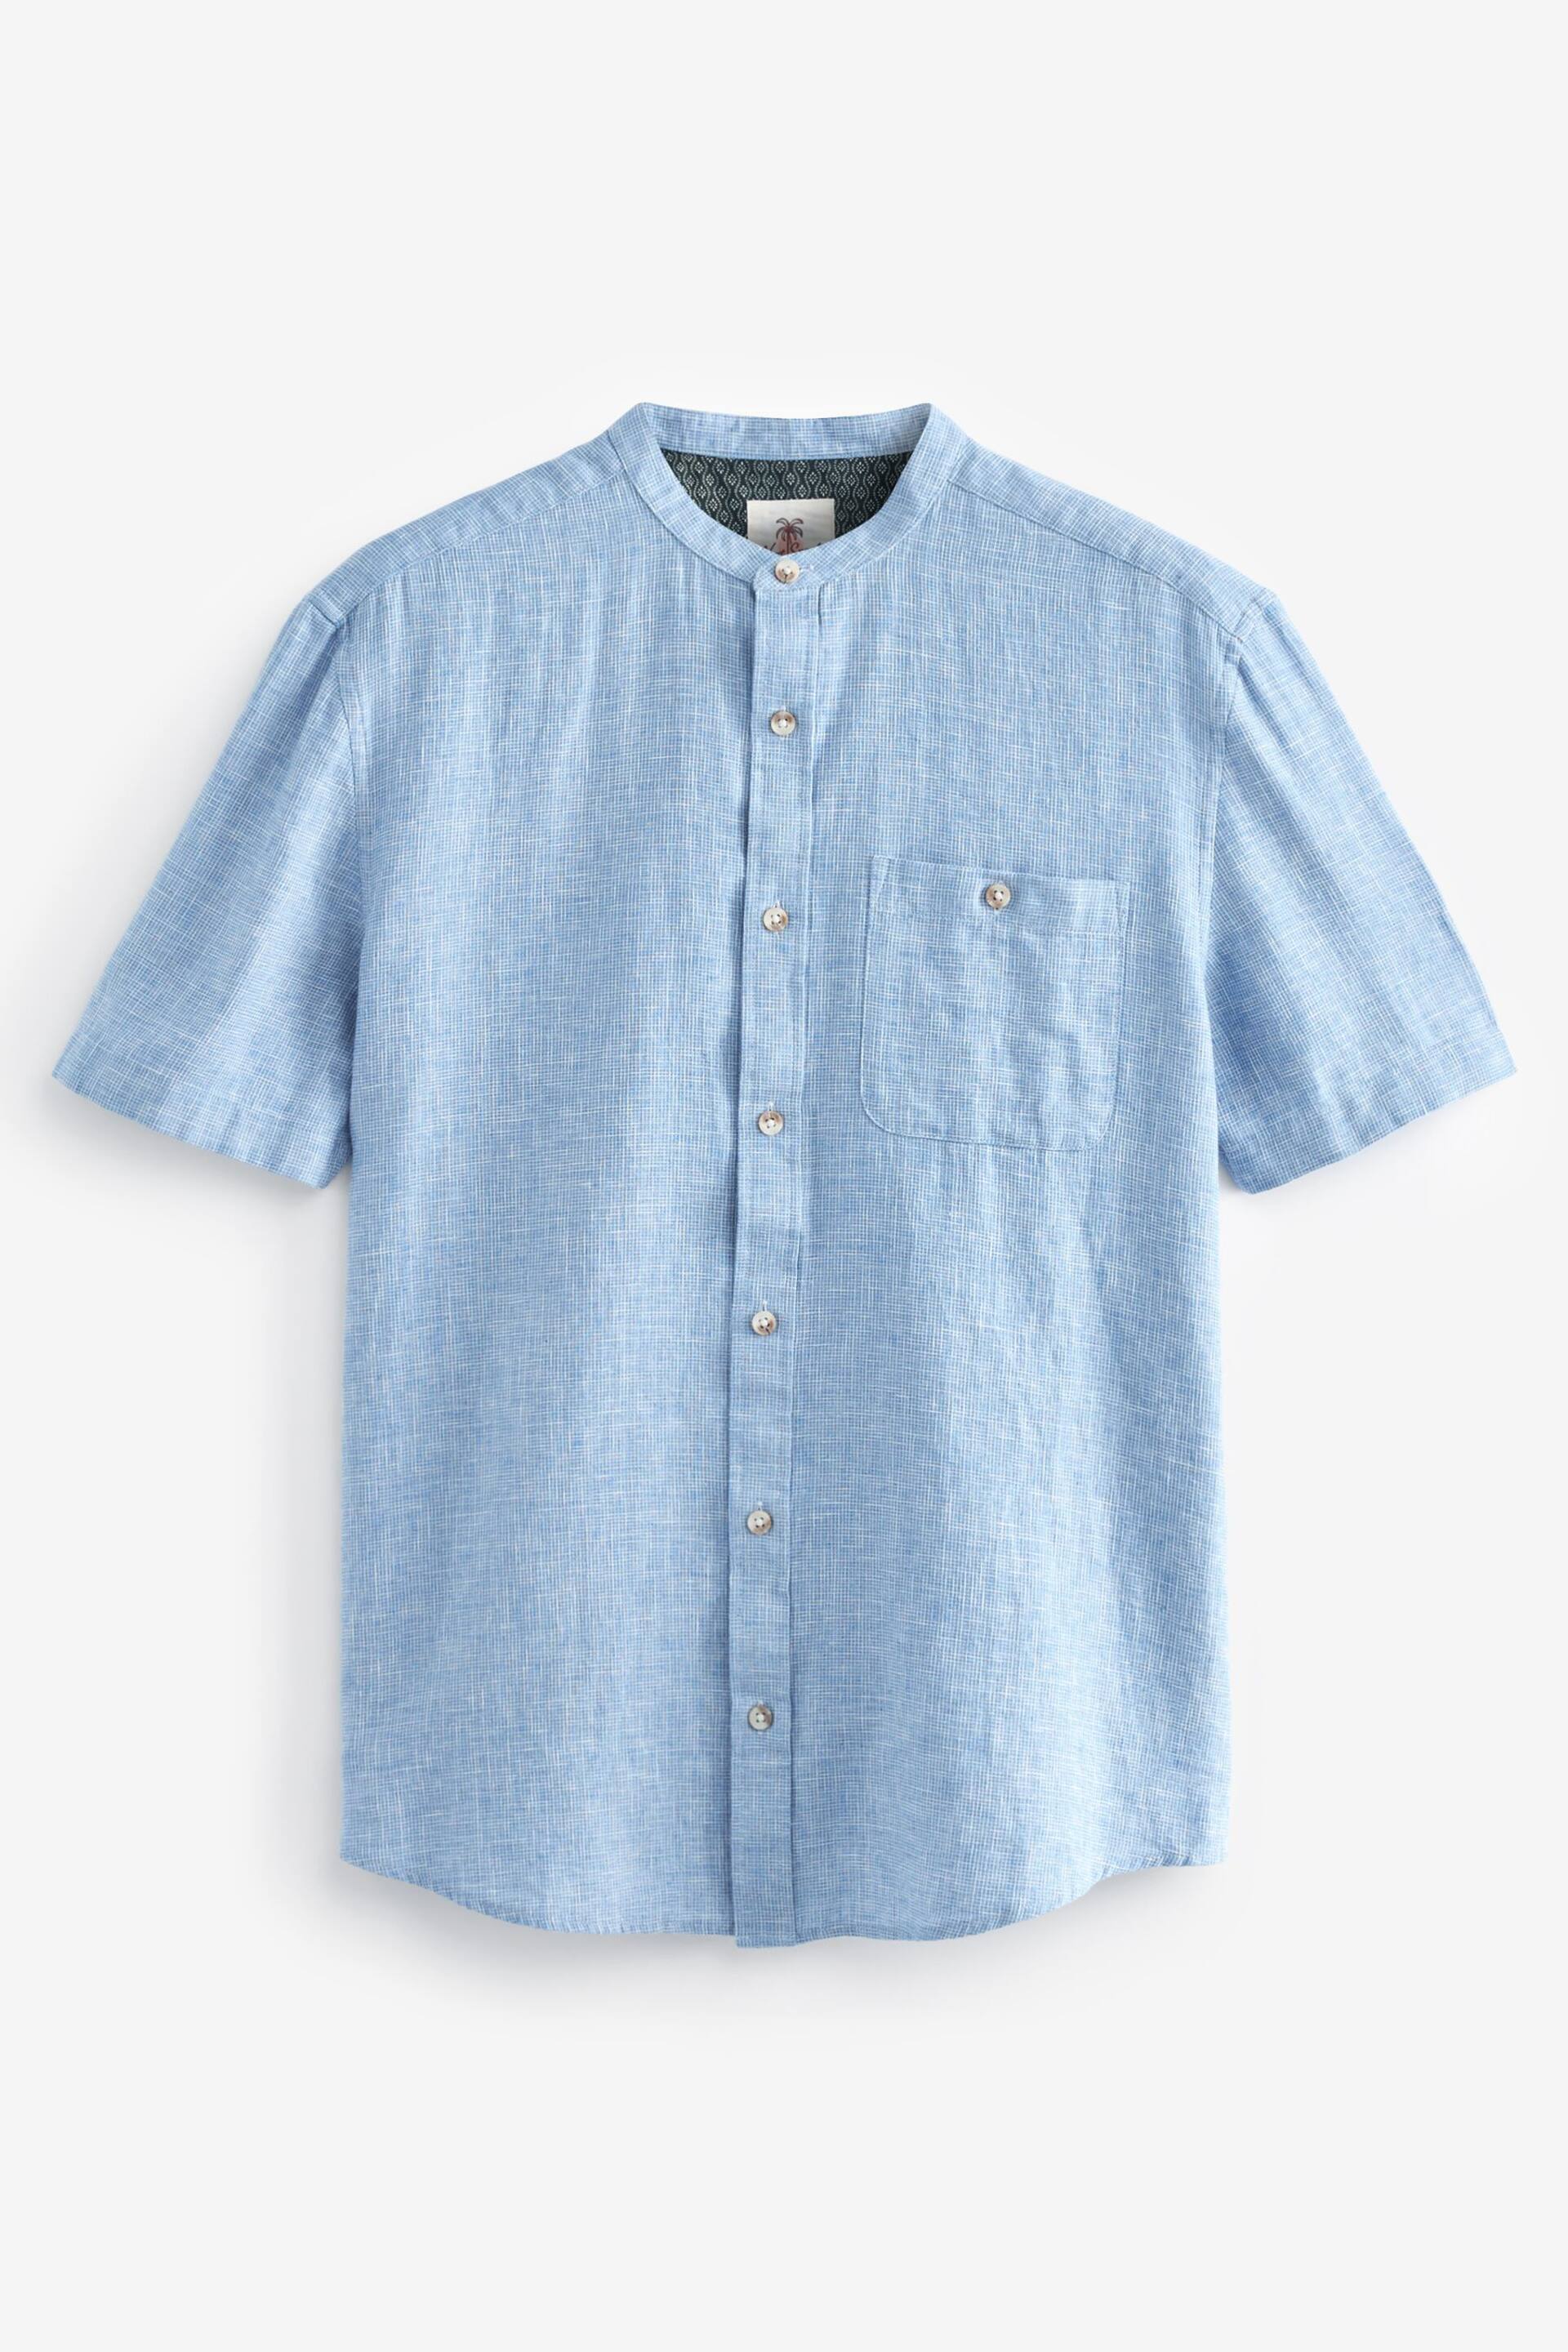 Blue Grandad Collar Linen Blend Short Sleeve Shirt - Image 5 of 7